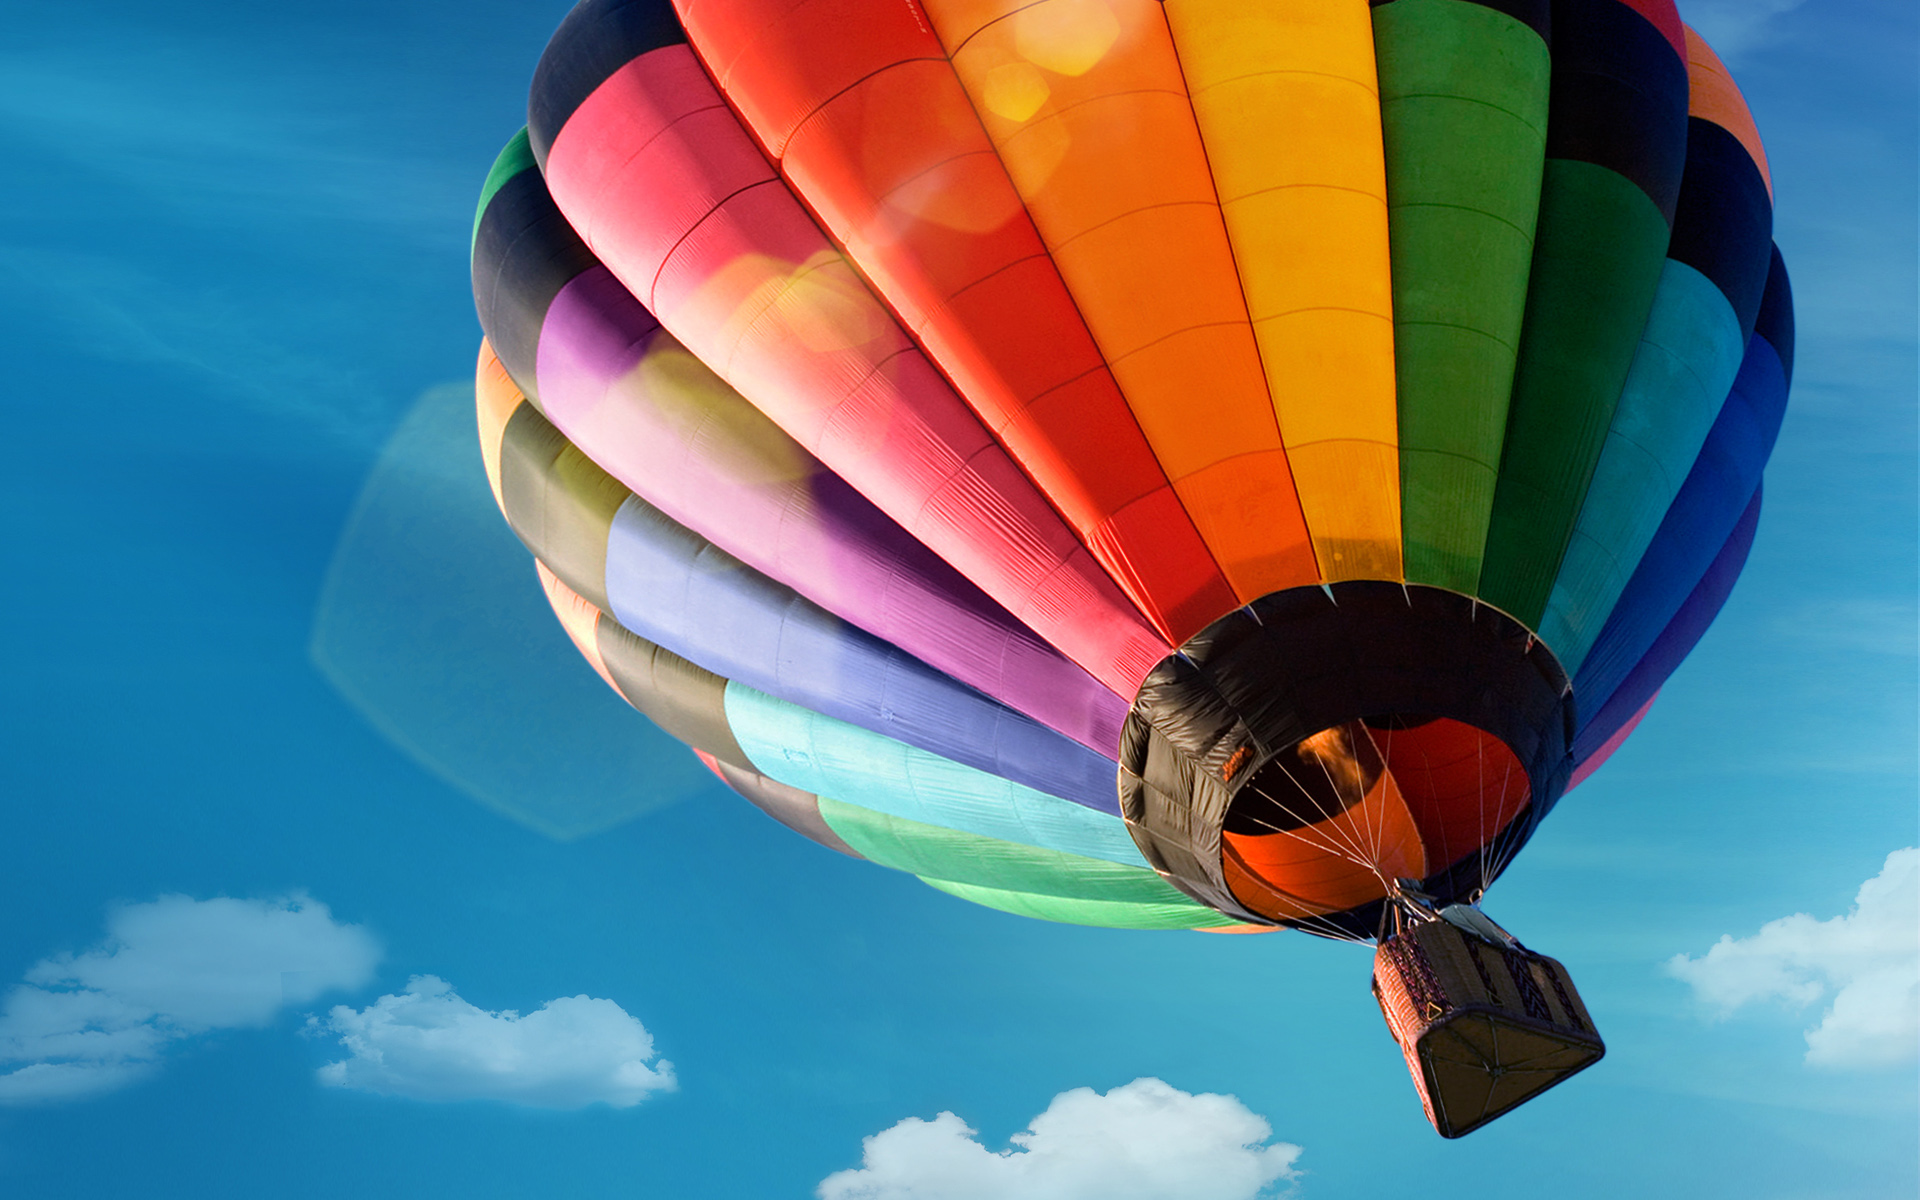 Colorfyl Hot Air Balloon742419020 - Colorfyl Hot Air Balloon - Colorfyl, Balloon